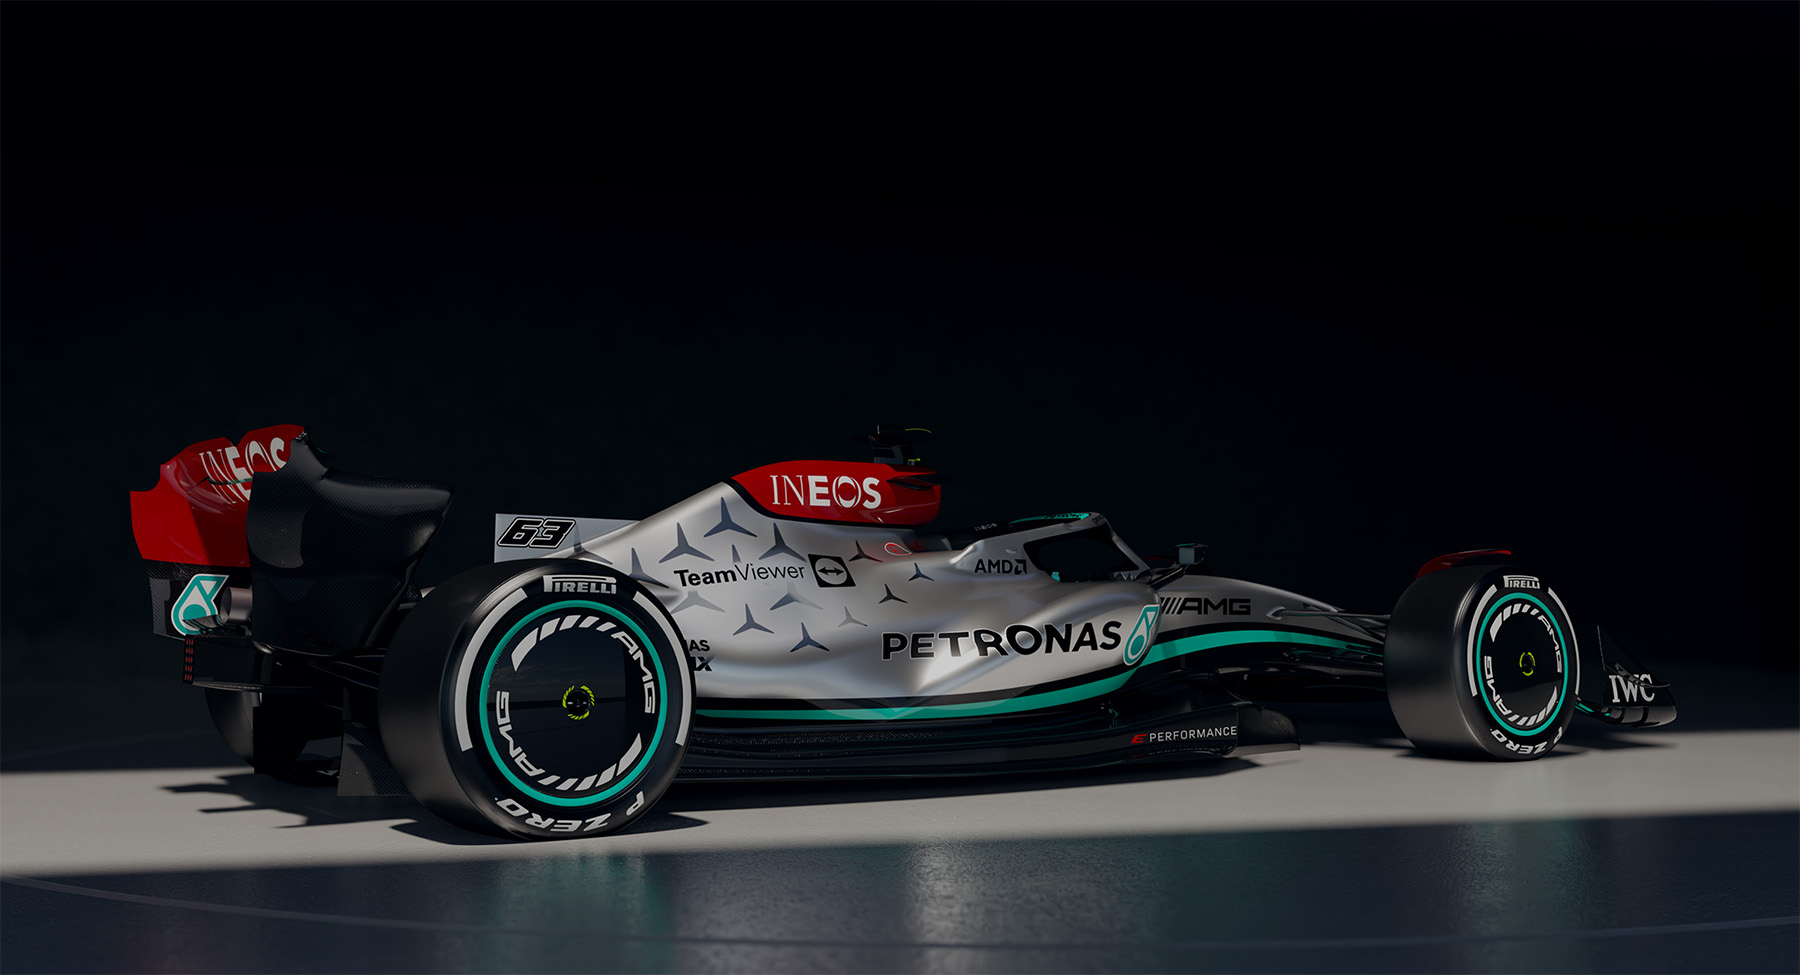 TeamViewer-branded Mercedes-AMG Petronas F1